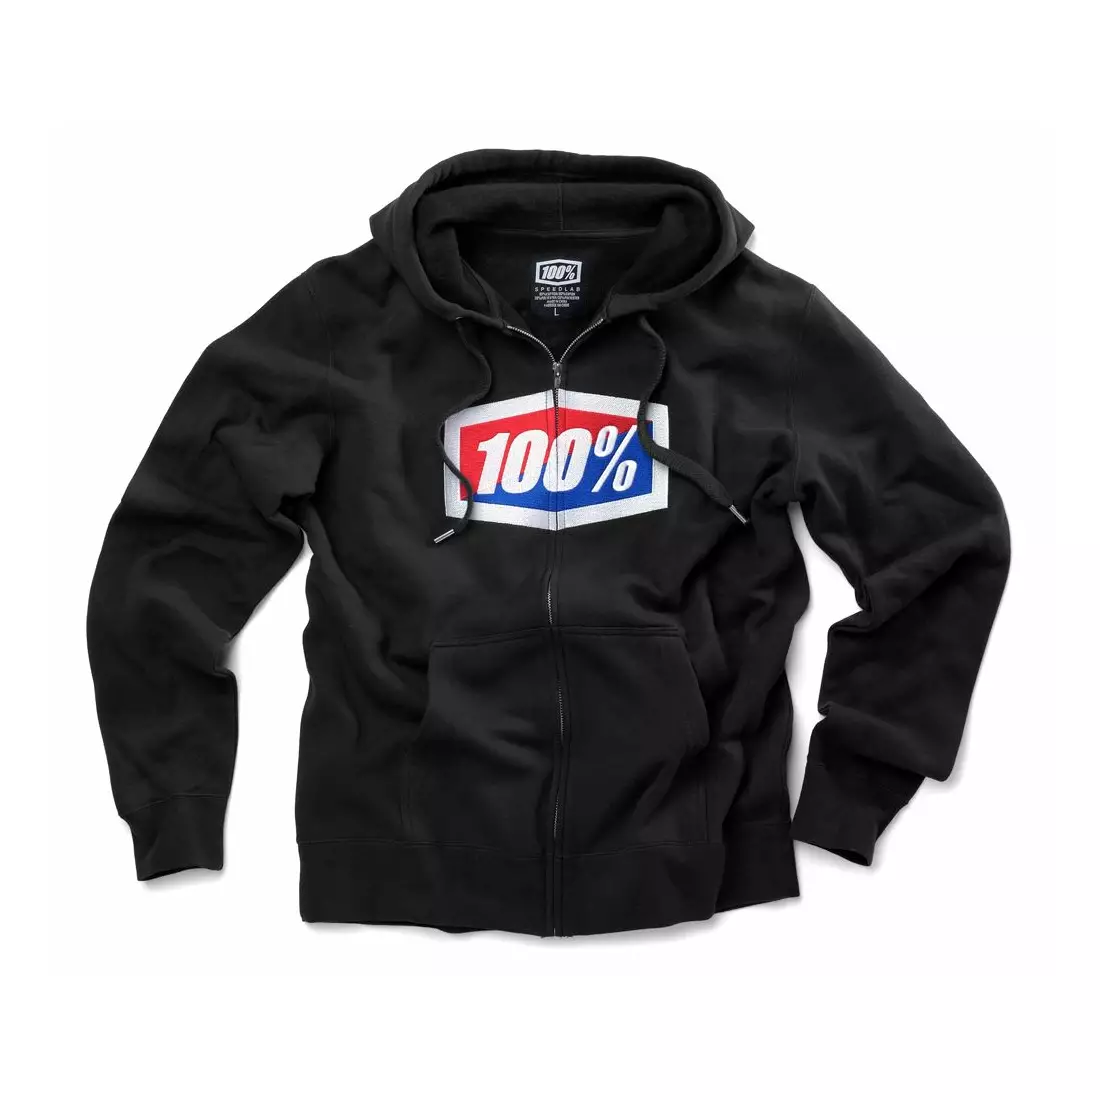 100% men's sports sweatshirt official hooded zip black STO-36005-001-10